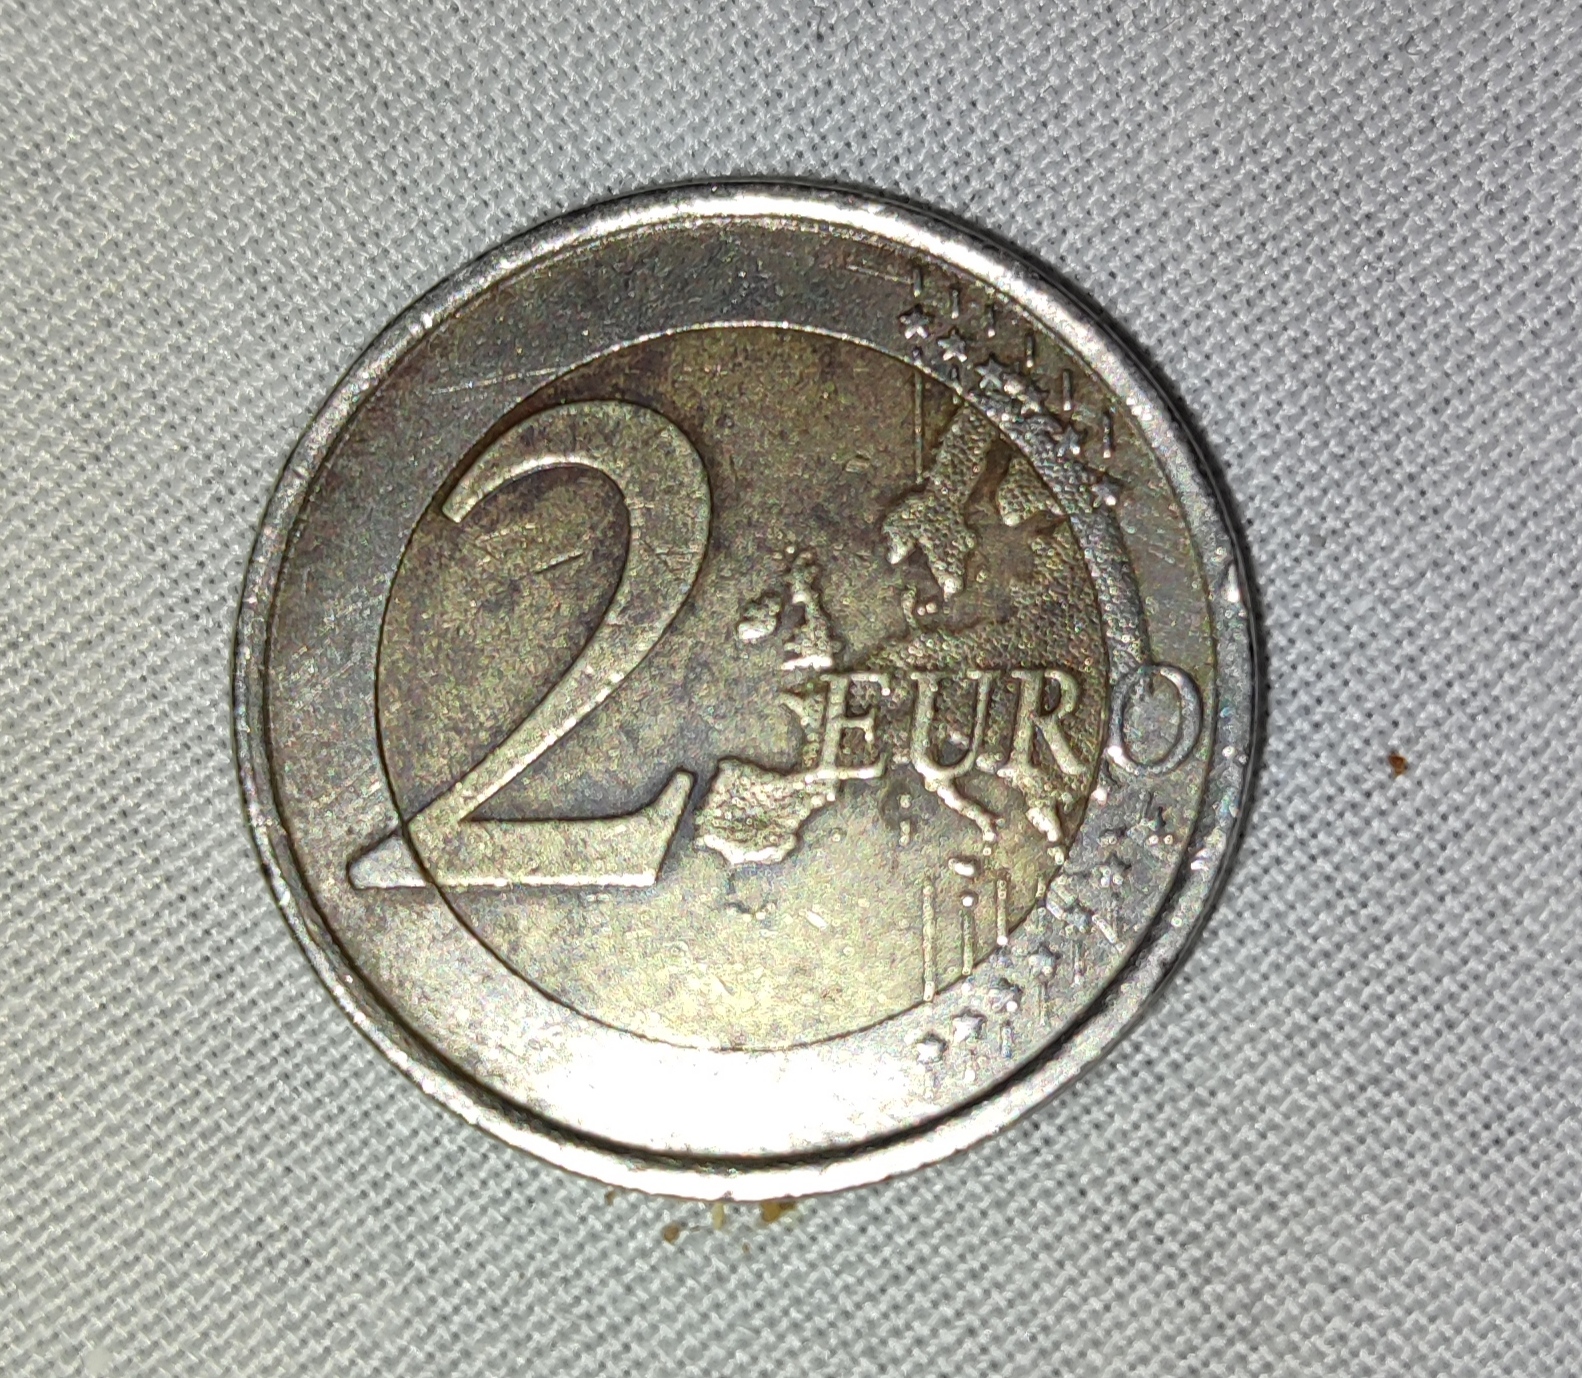 2 Euro Spain Spanien 2010